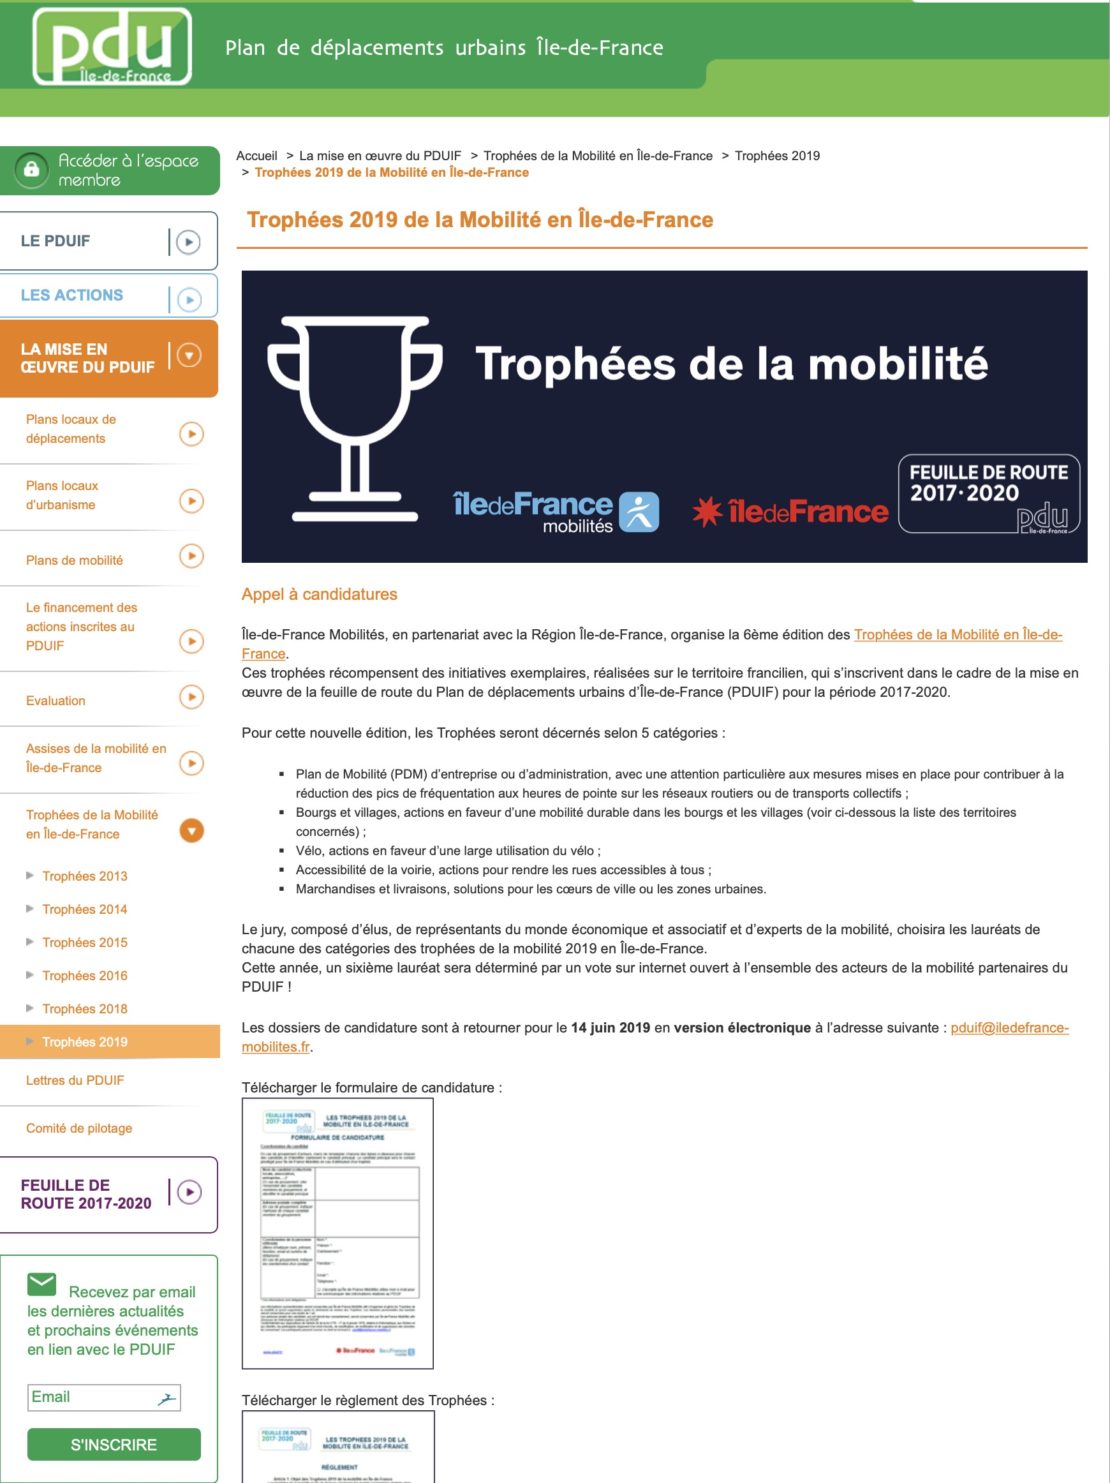 Trophées 2019 de la Mobilité en Île-de-France